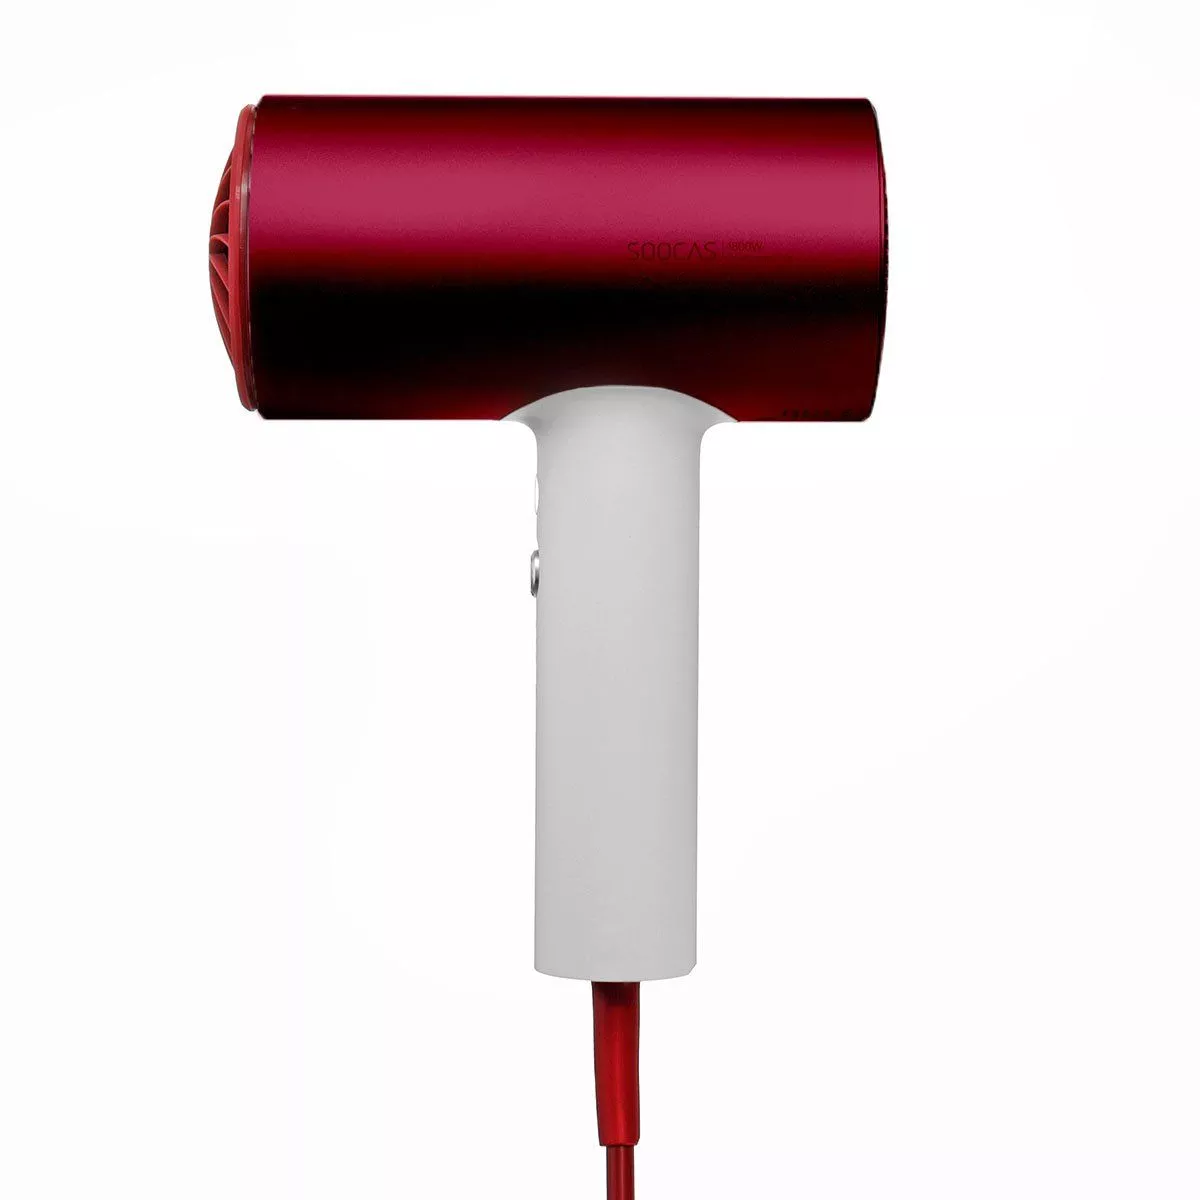 Фен soocas hair dryer. Фен soocas h5 Red. Фен soocas hair Dryer h5. Фен Xiaomi soocas h3s. Фен для волос Xiaomi soocas h5 Anion hair Dryer (Red).